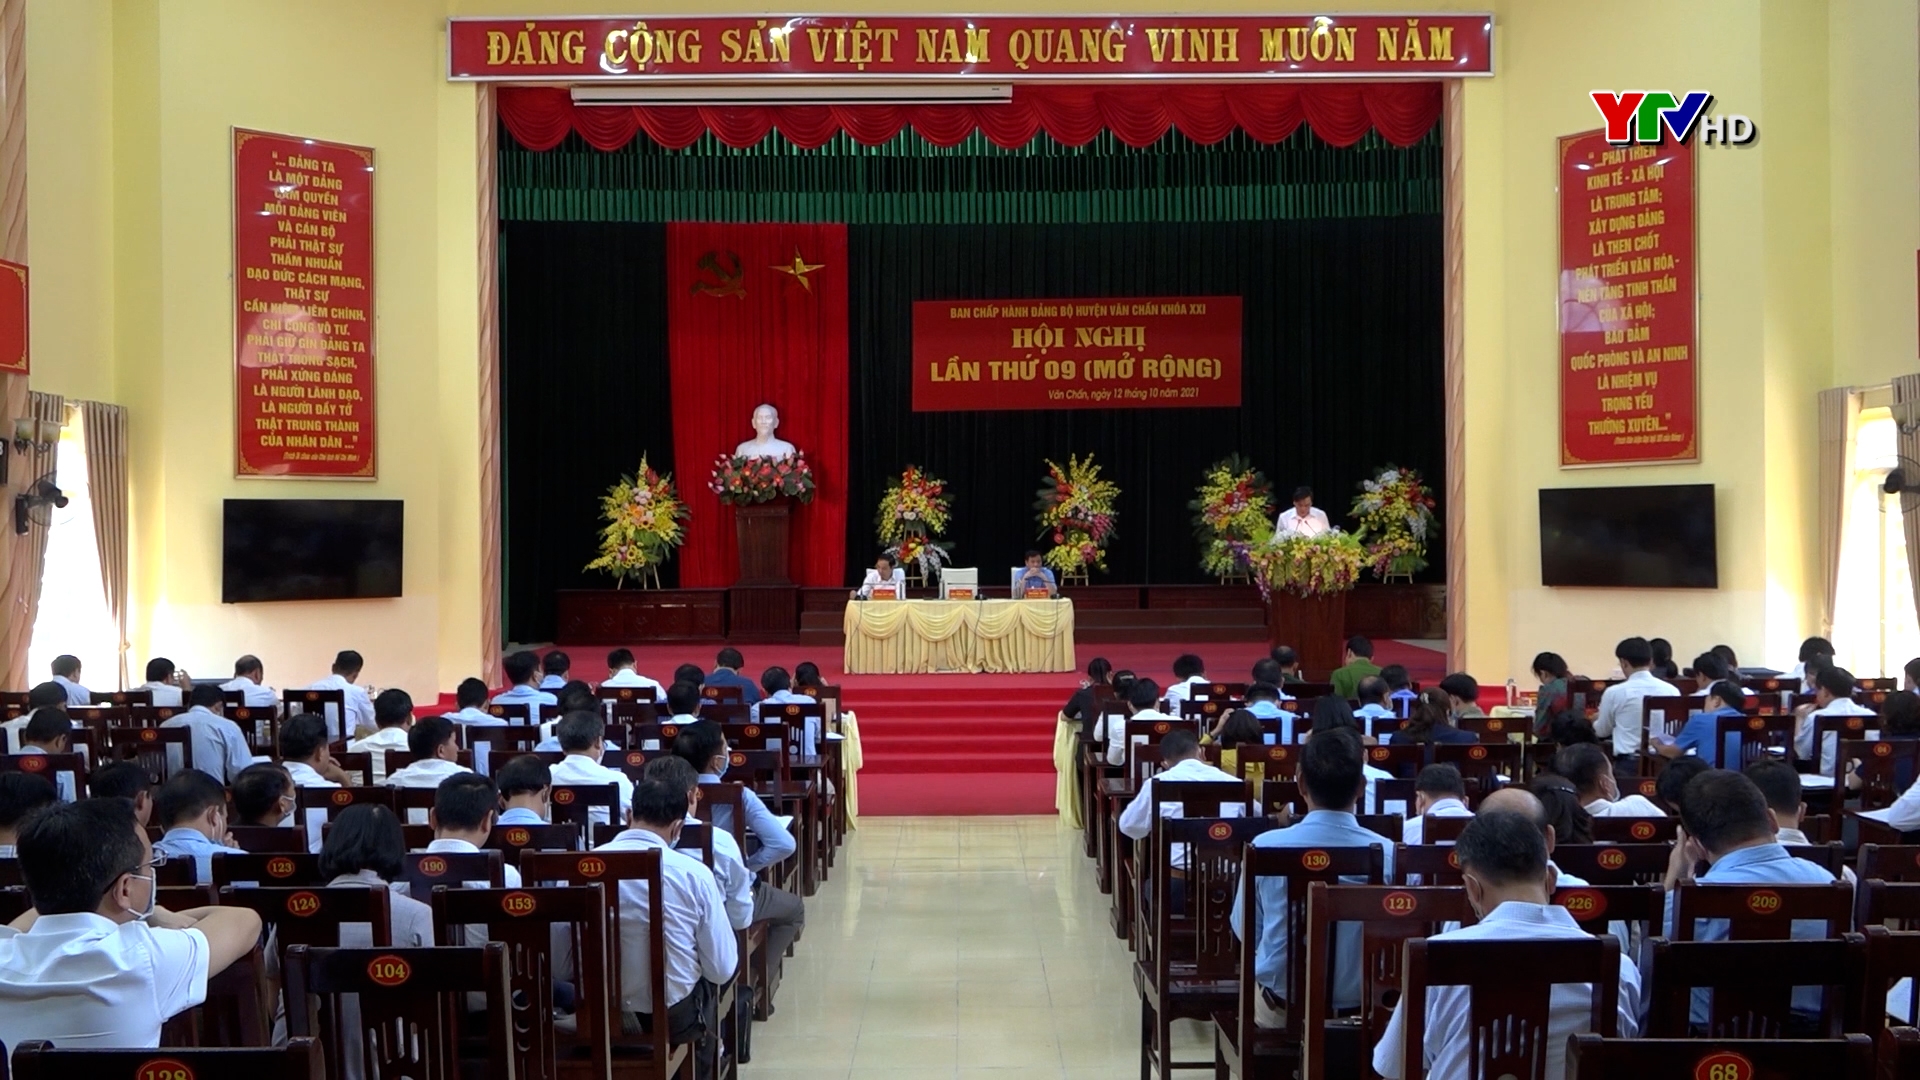 BCH Đảng bộ huyện Văn Chấn tổ chức Hội nghị lần thứ 9 (mở rộng)